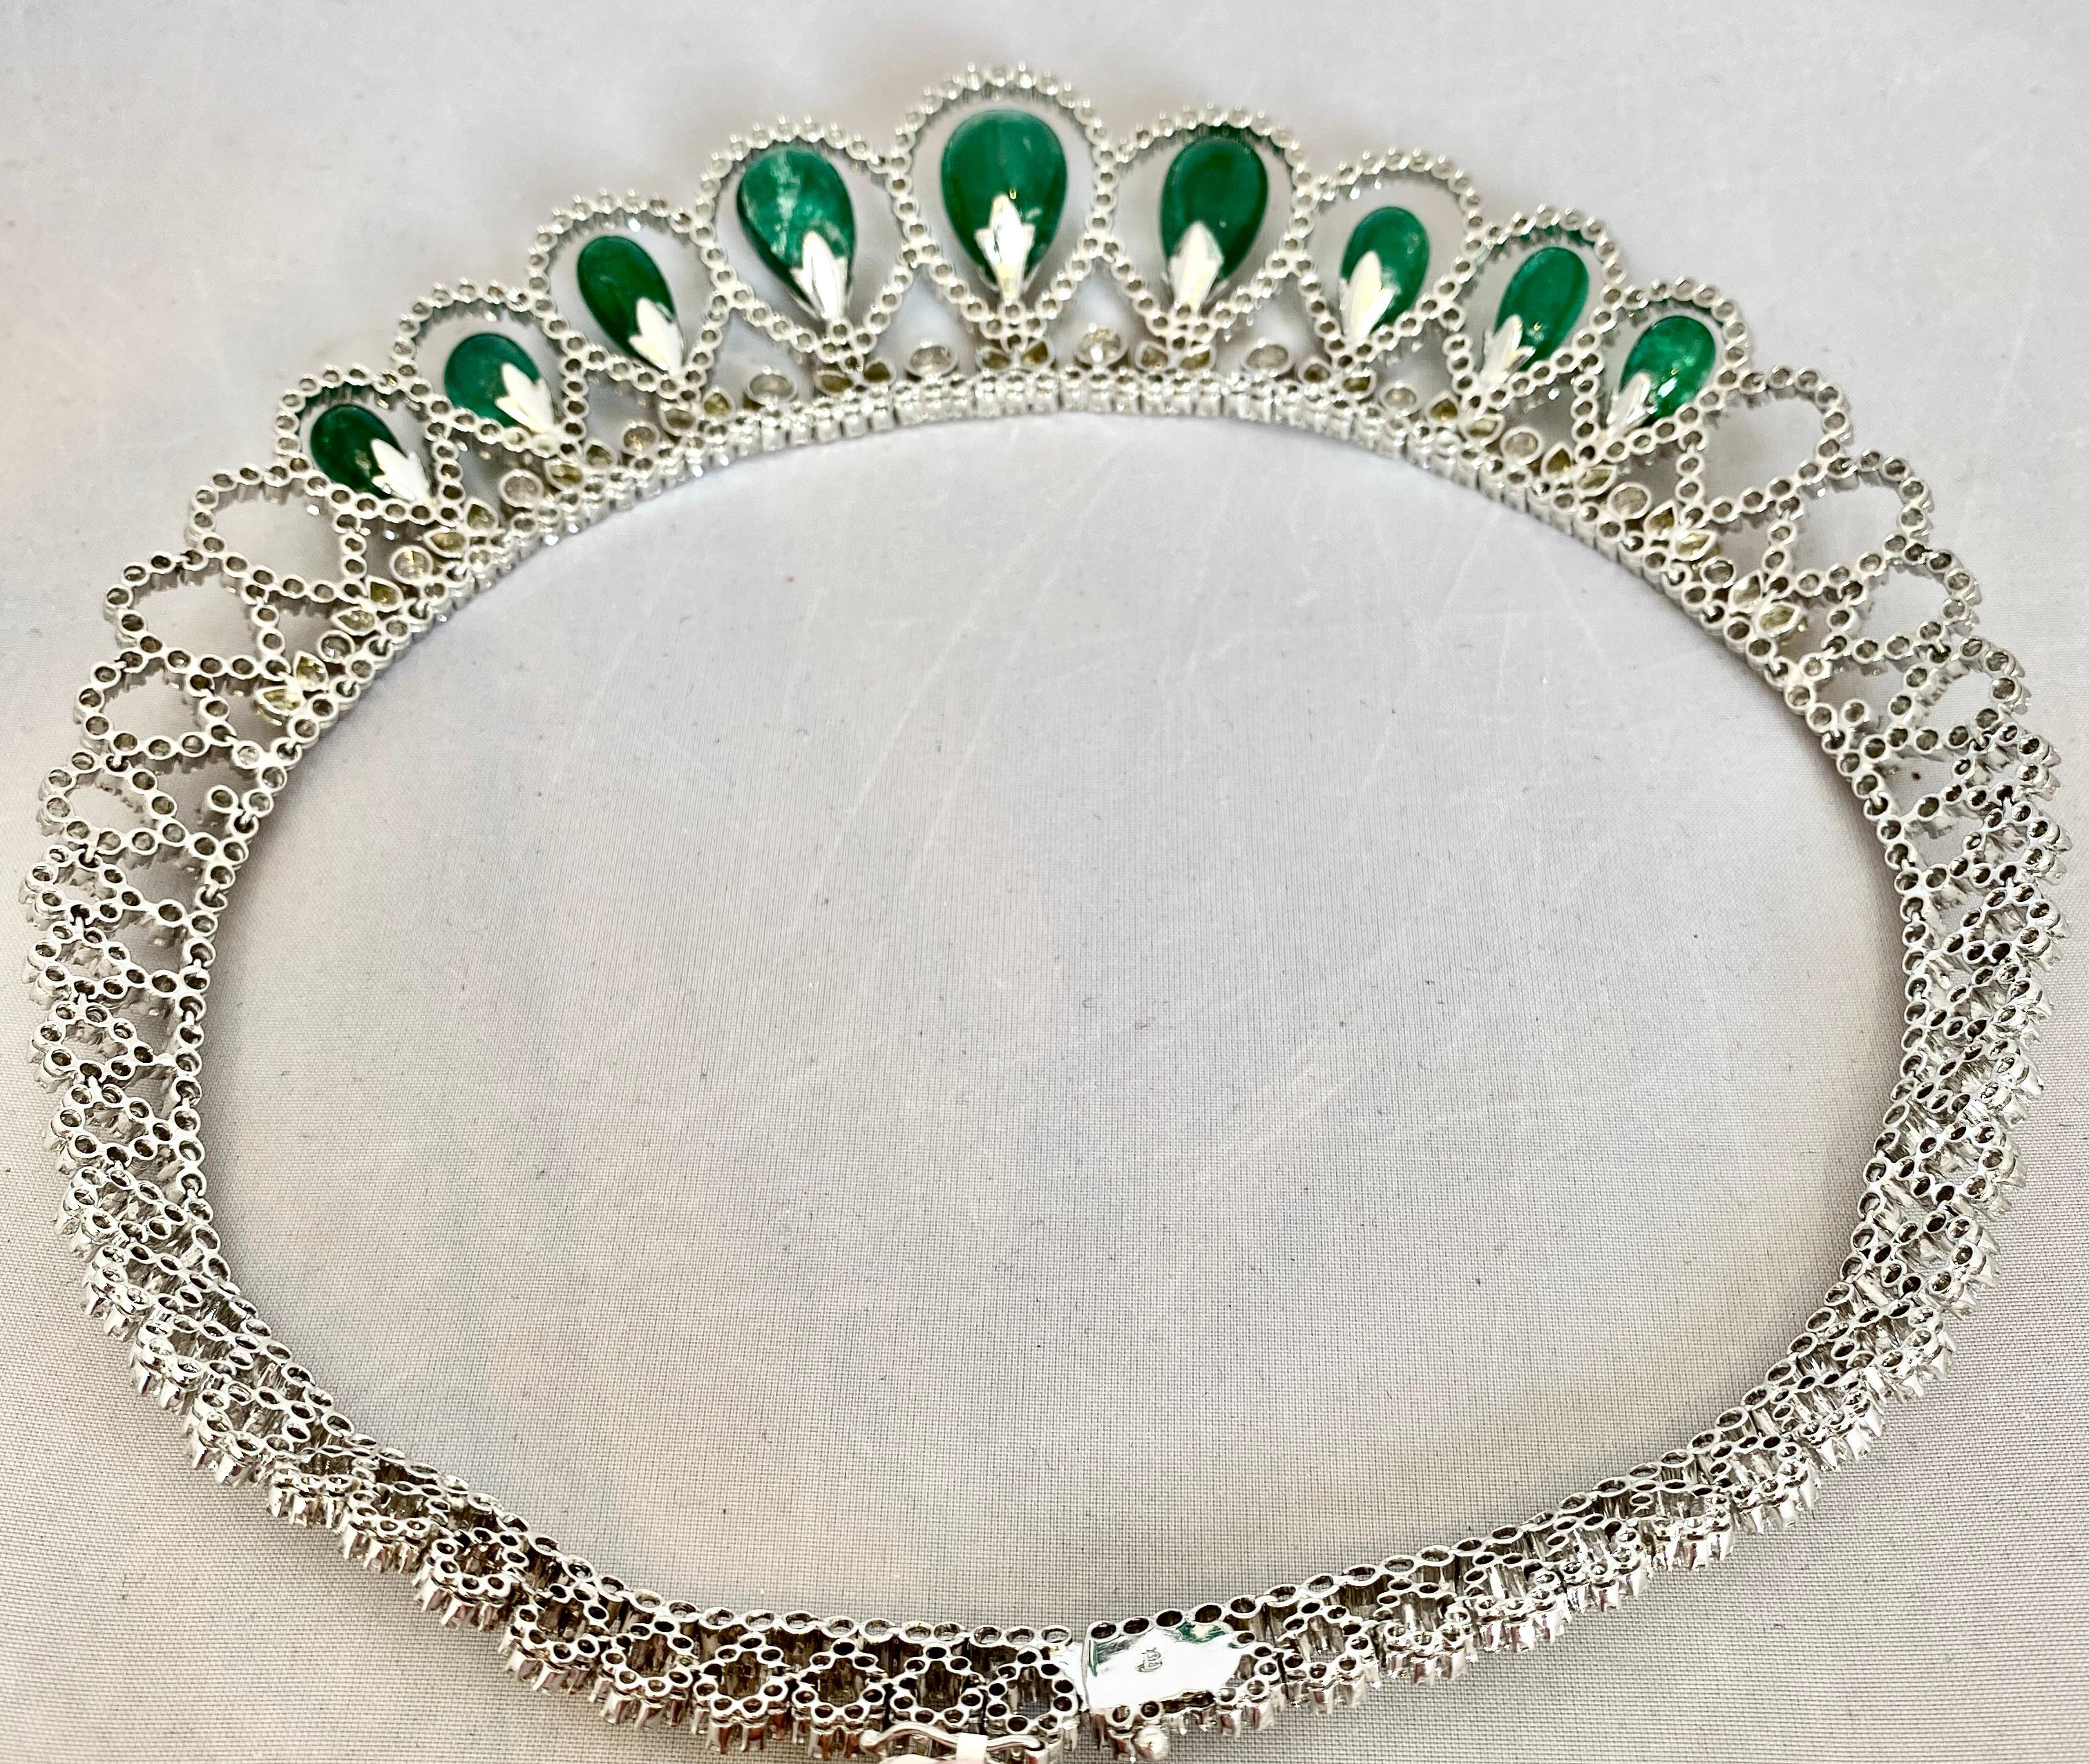 Contemporary Cabochon Emerald and Diamond Collier